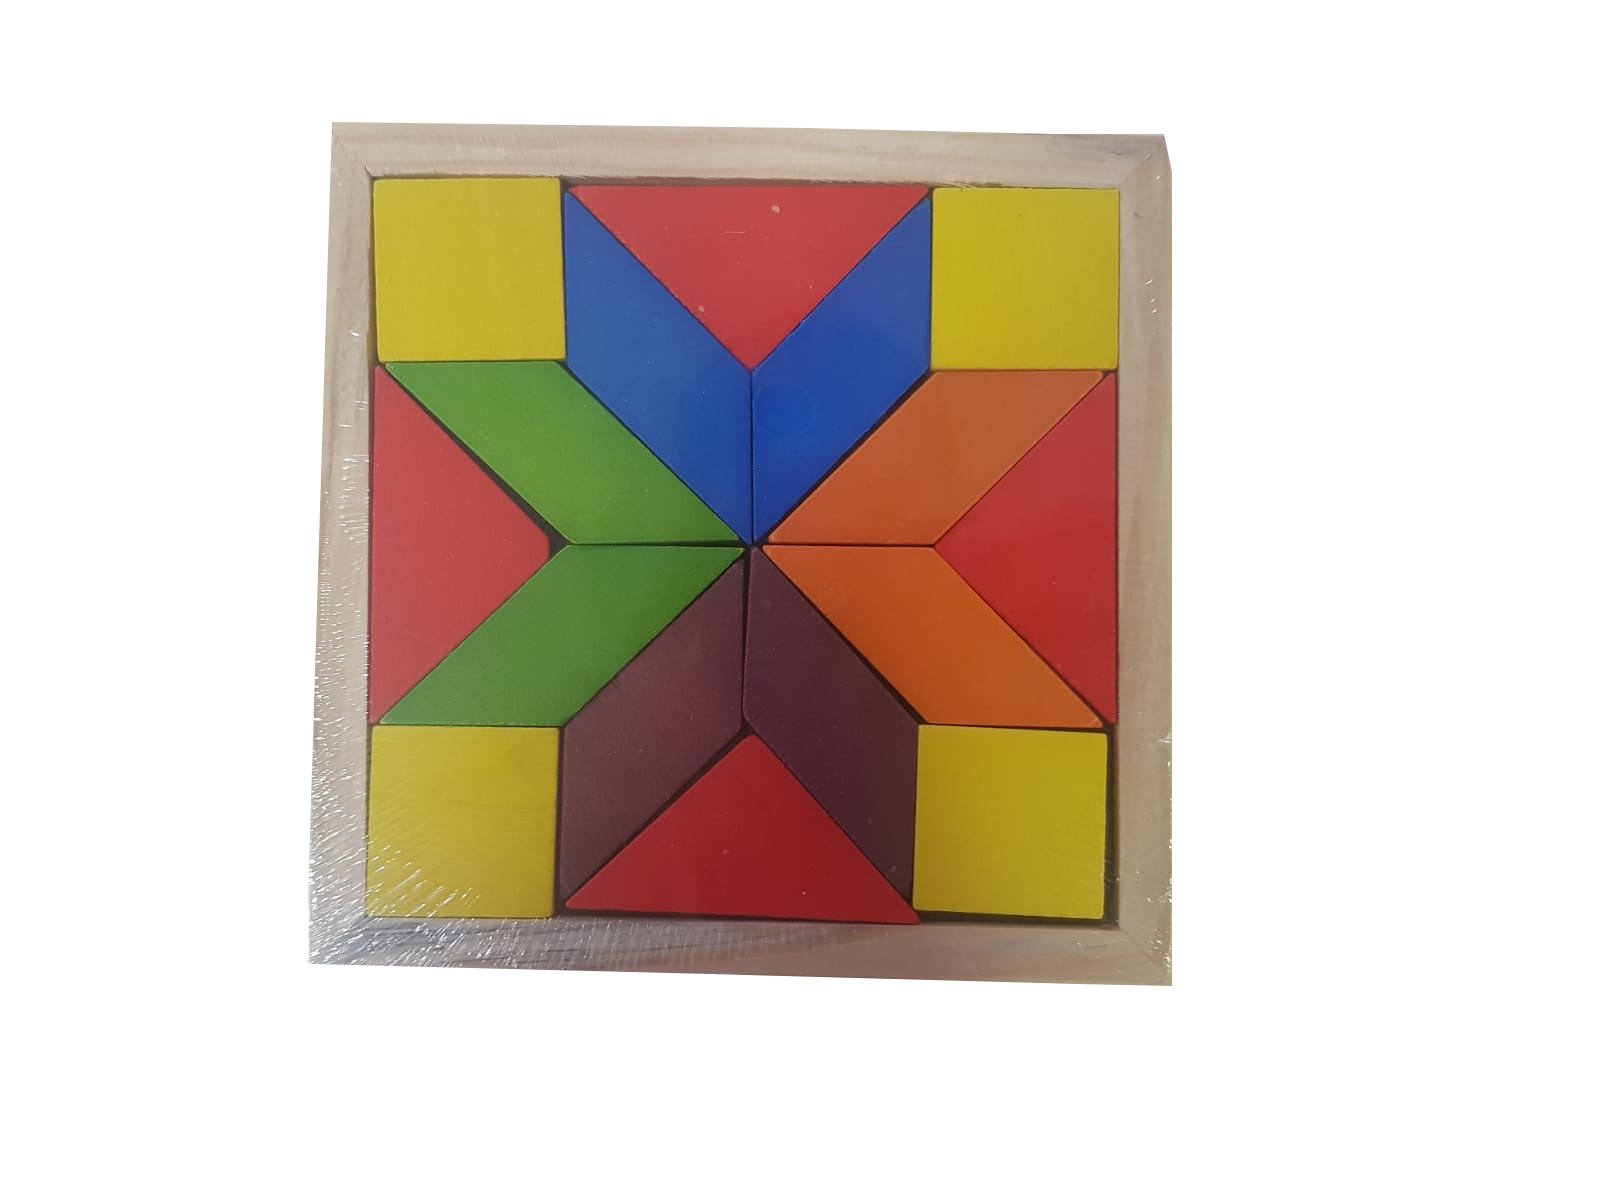 Pachetul contine: Jucarie educativa puzzle din lemn Curcubeu cu piese de diferite dimensiuni, forme si culori, cu ajutorul lor cei mici dar si cei mari, pot realiza diferite forme geometrice .